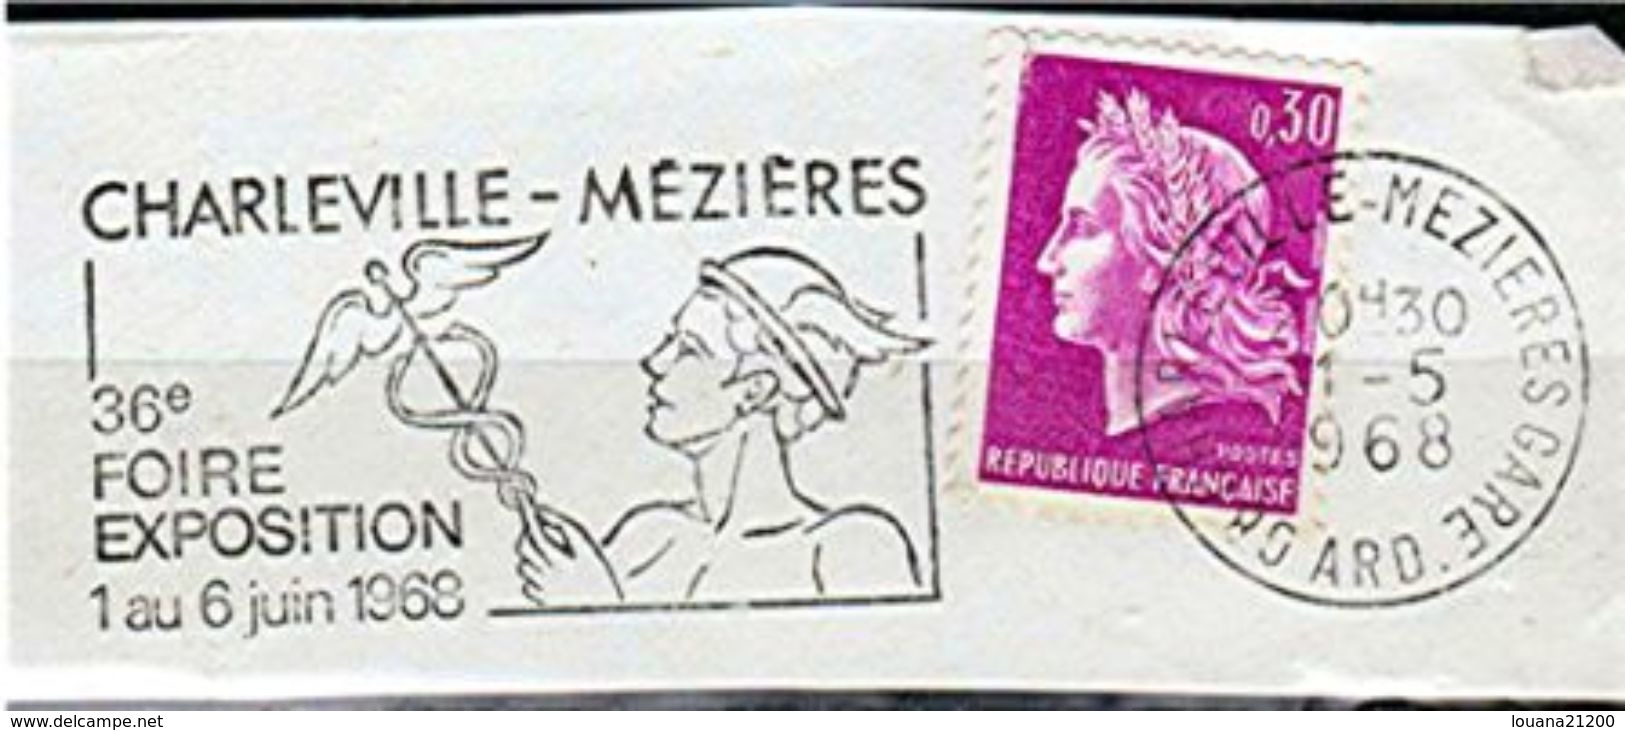 FLAMME SUR FRAGMENT " 36° FOIRE EXPOSITION 1968 CHARLEVILLE MEZIERE " MÉDECINE CADUCÉE CASQUE _F75 - Mechanical Postmarks (Advertisement)